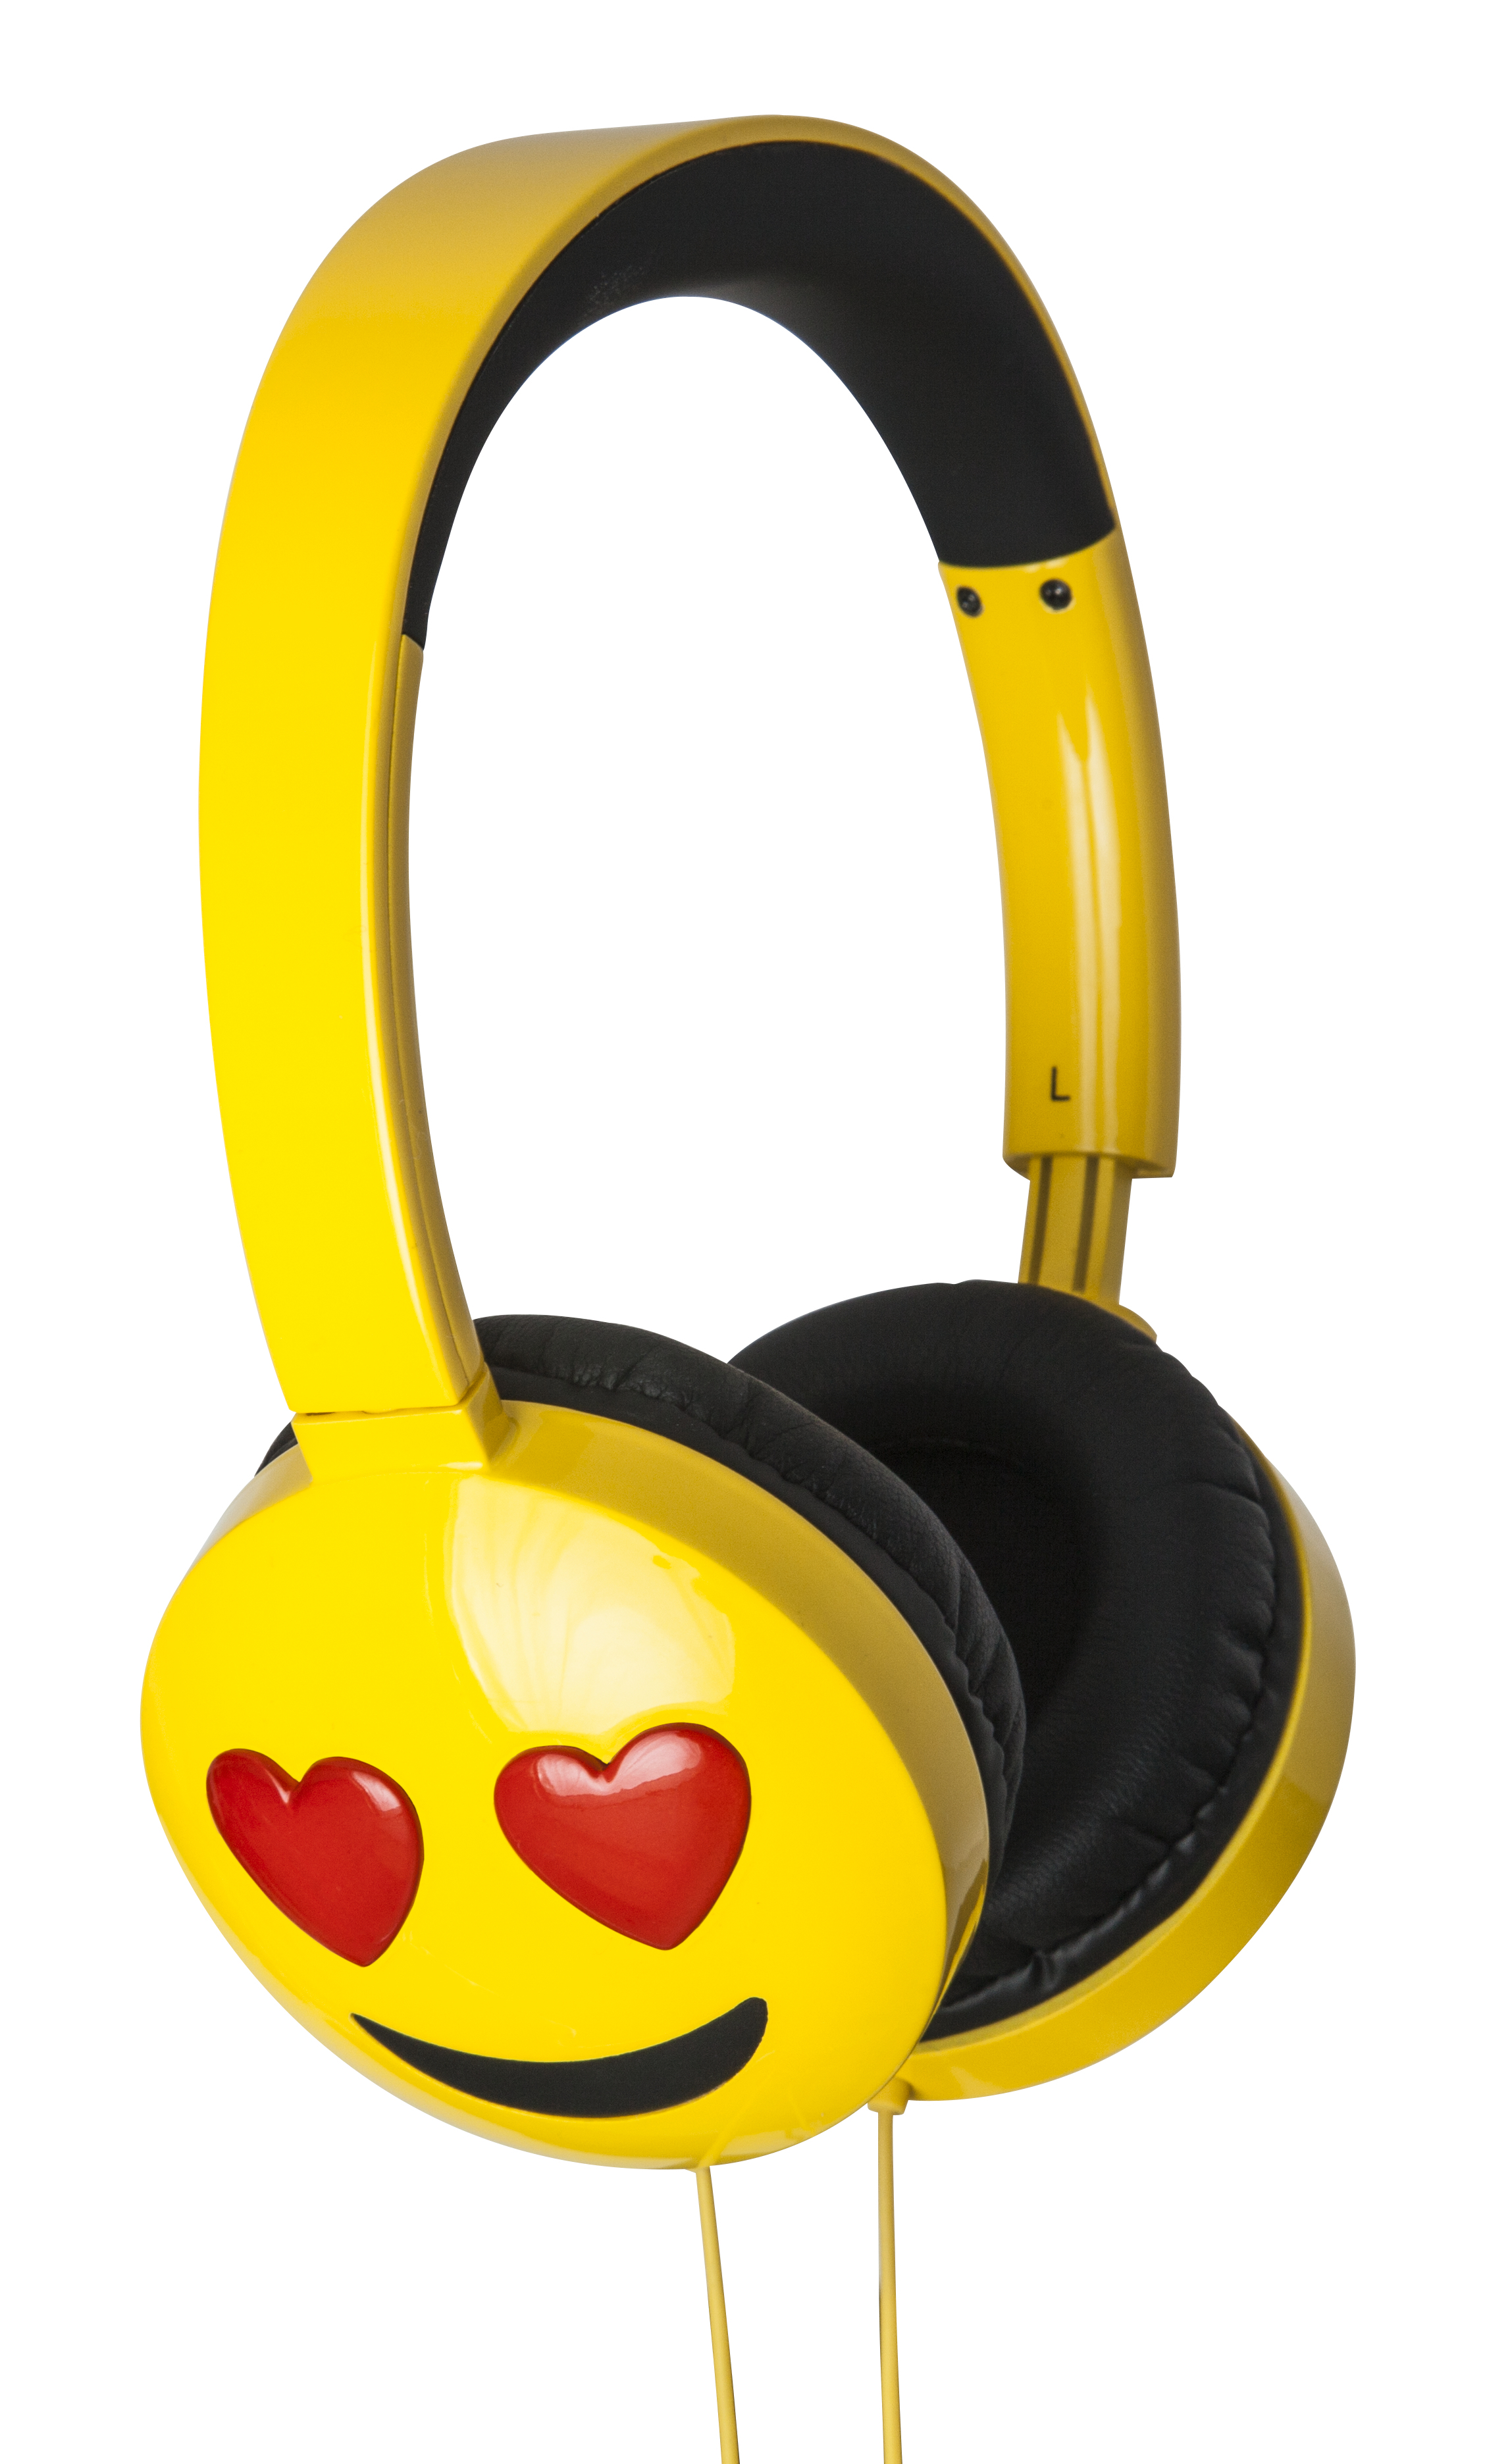 Jam Audio Jamoji Love Struck On-Ear Headphones